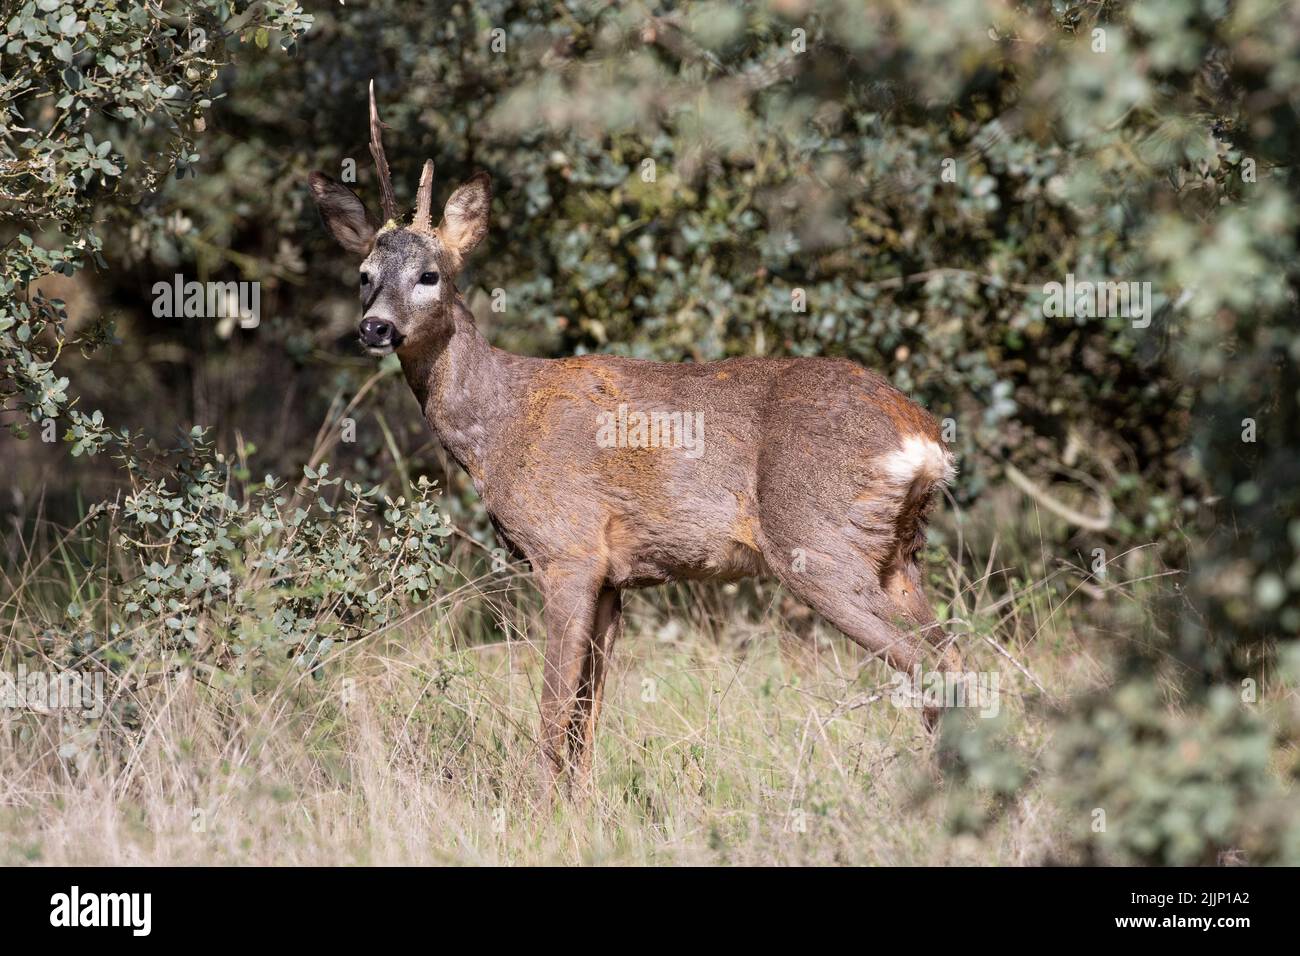 Cazzo di capreolus capreolus cervo con corna spezzate in piedi su erba vicino a lussureggianti cespugli al di fuori del bosco Foto Stock